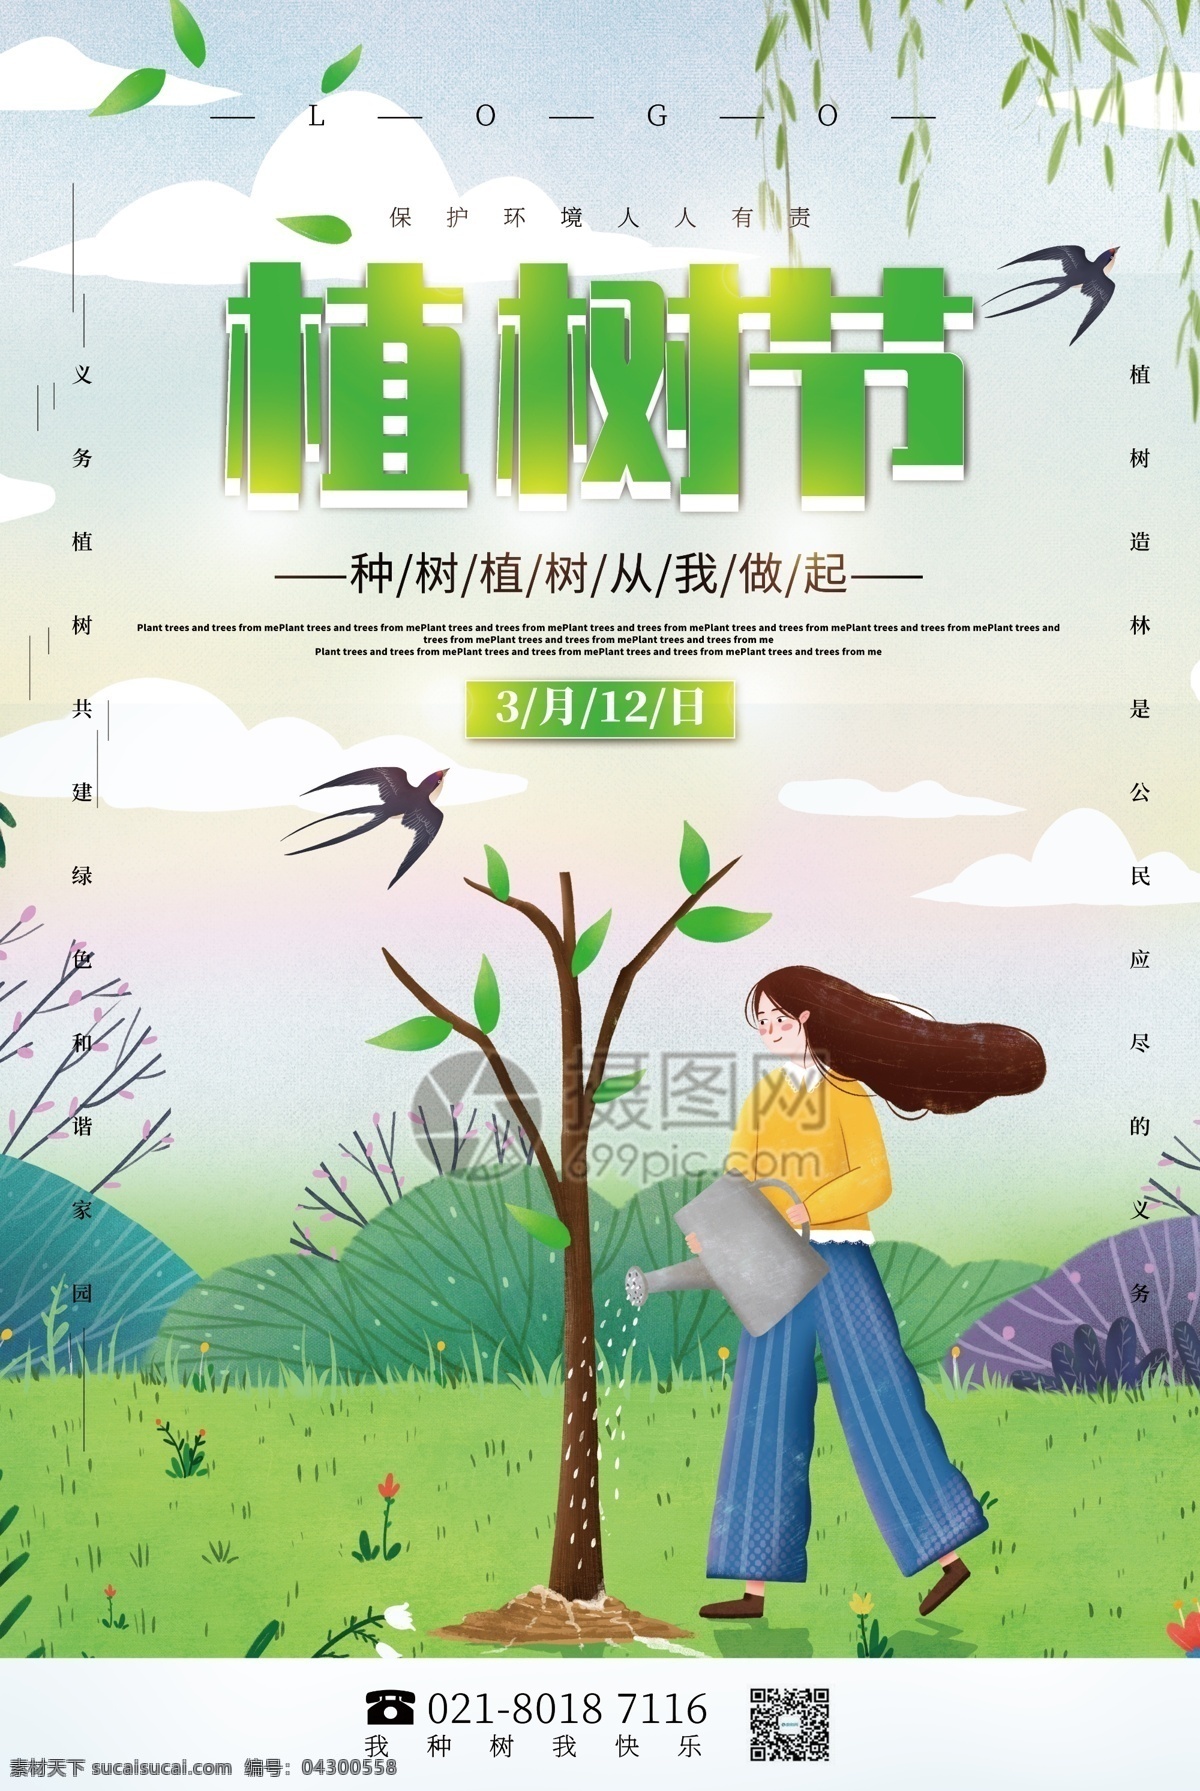 绿色 清新 植树节 公益 宣传海报 宣传 海报 环境 种树 种子 春天 植树 浇水 树苗 植树节海报 3月12月